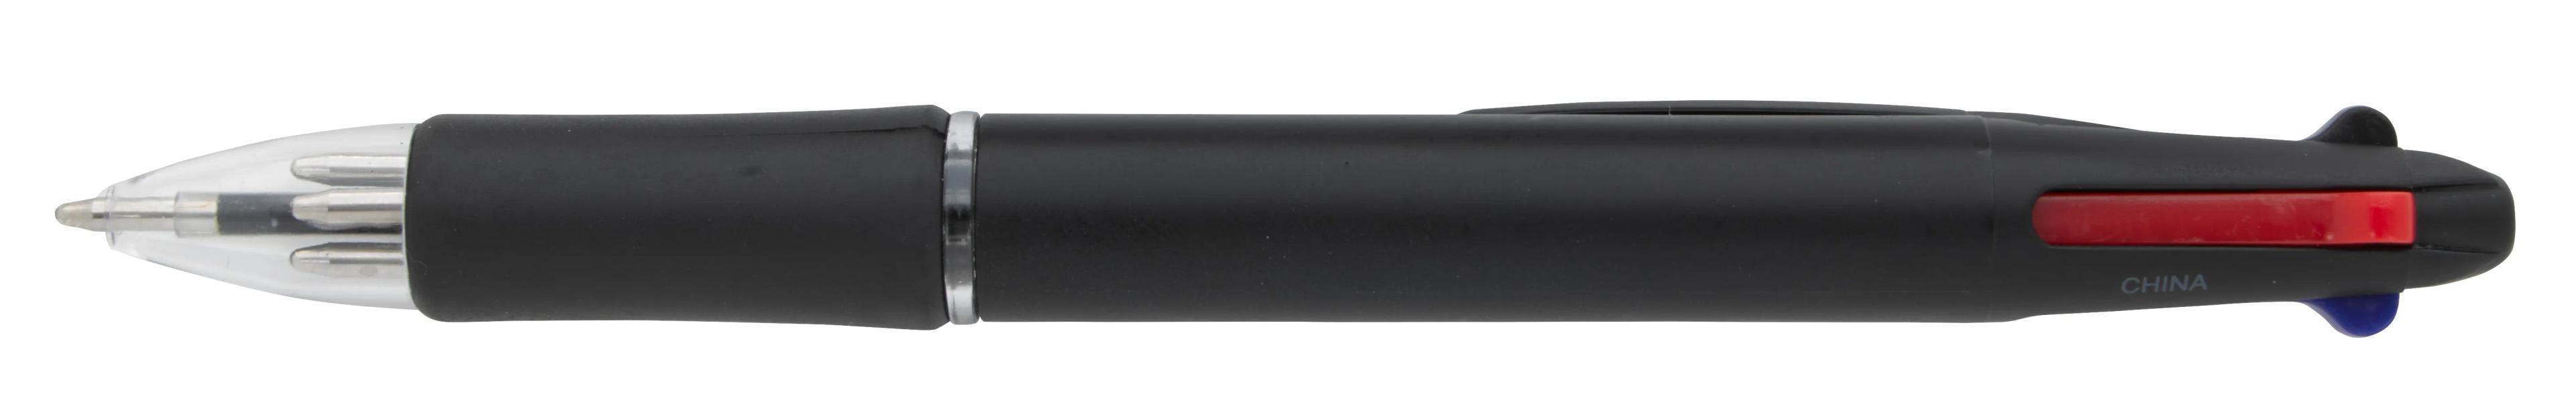 Orbitor Pen 14 of 31